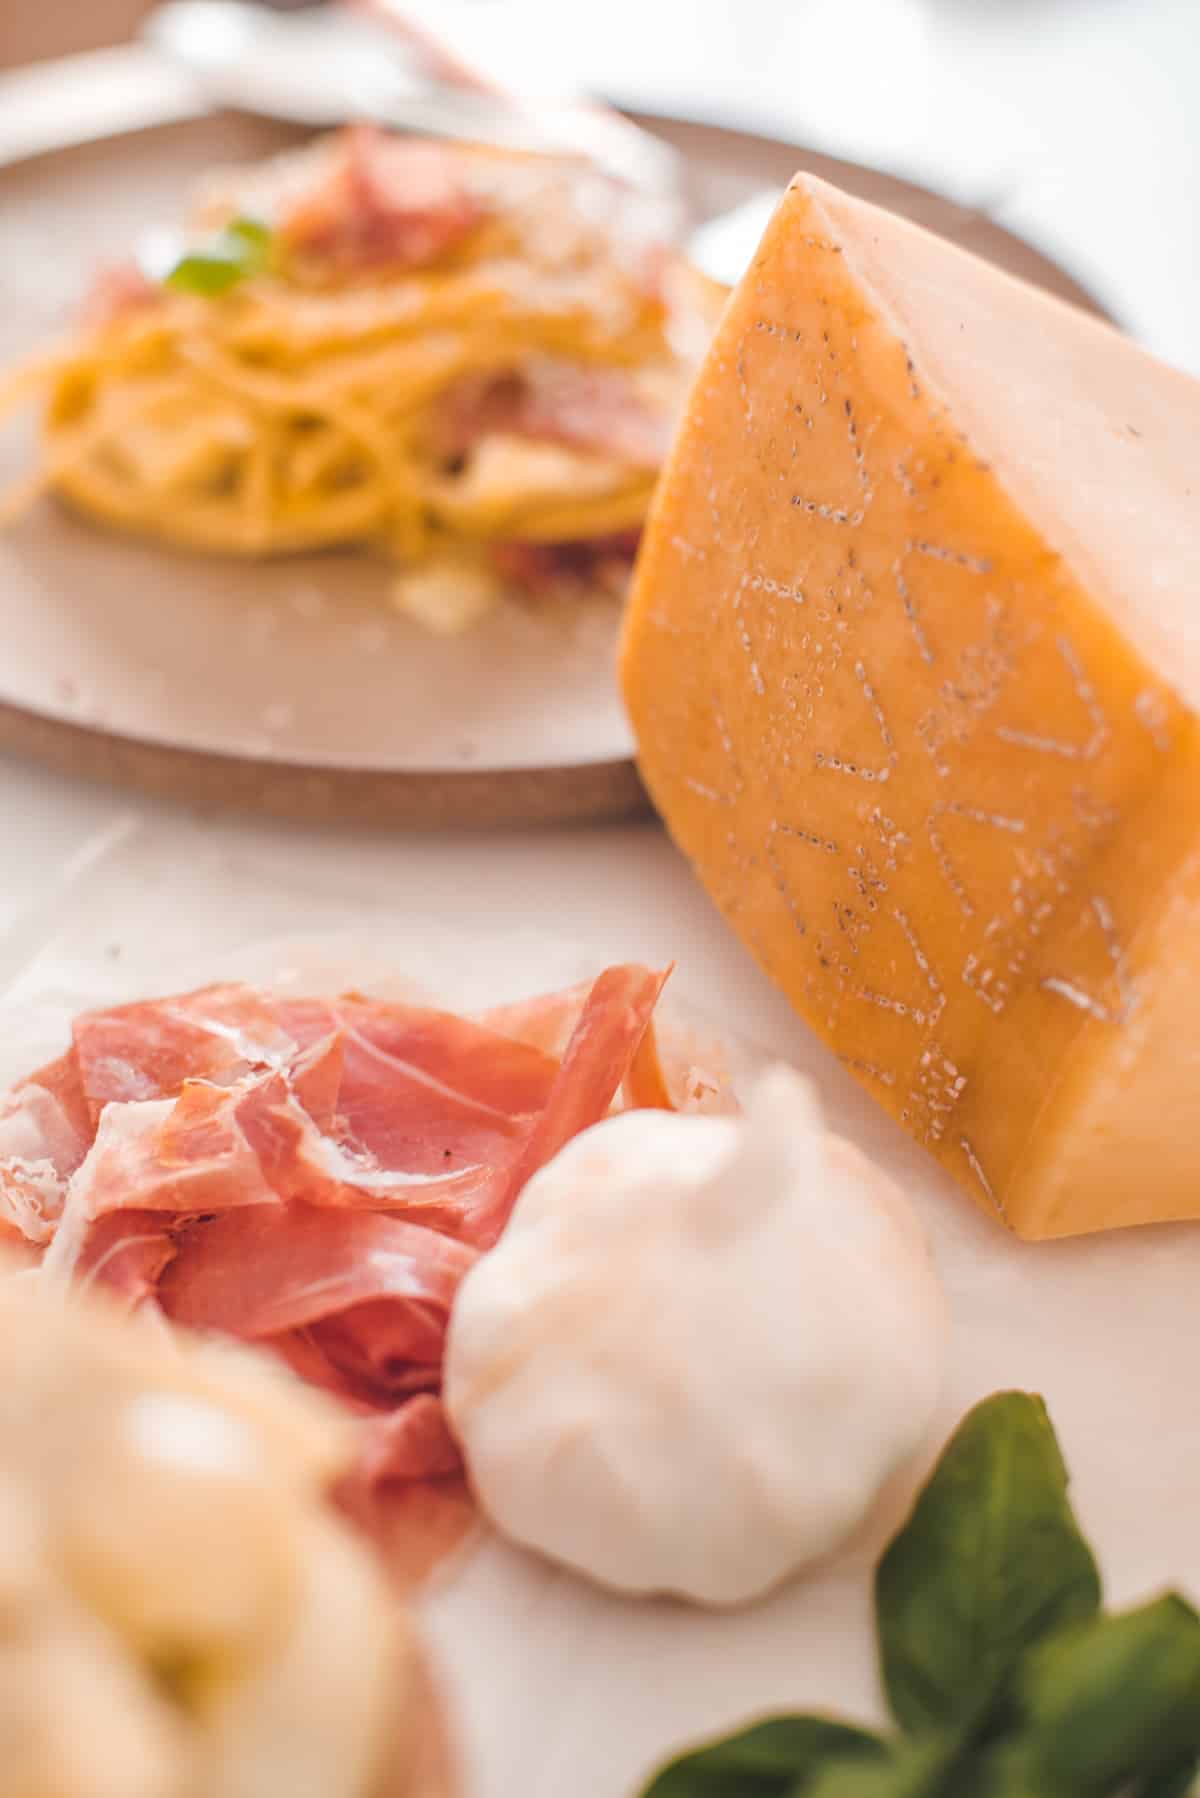 Grana Padano Cheese and Prosciutto di San Daniele or Classic Carbonara